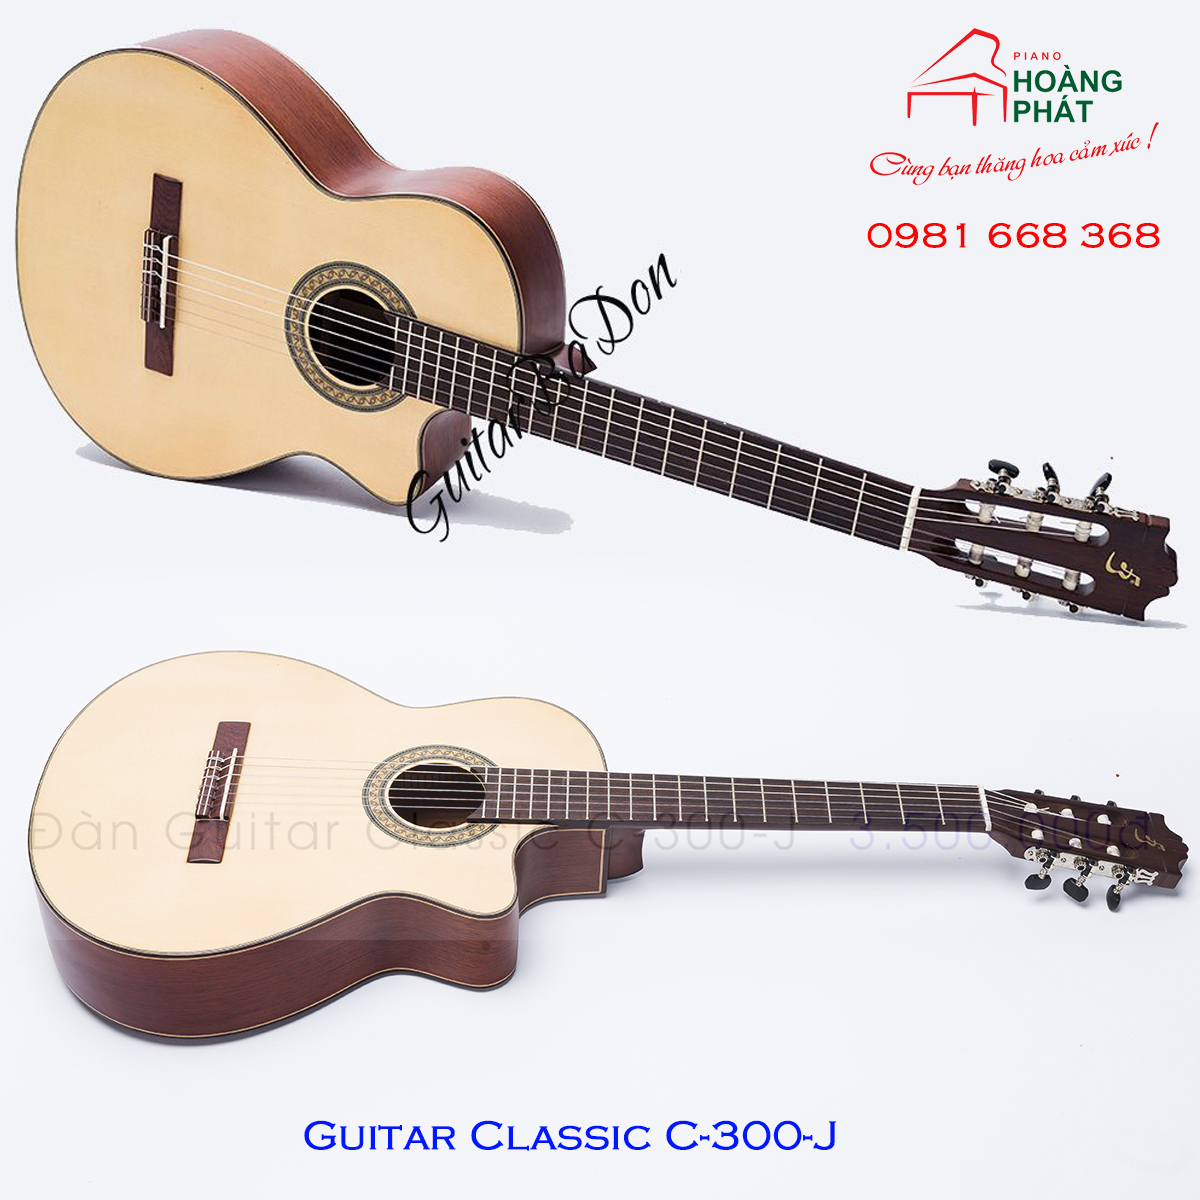 Guitar Classic C-300-J